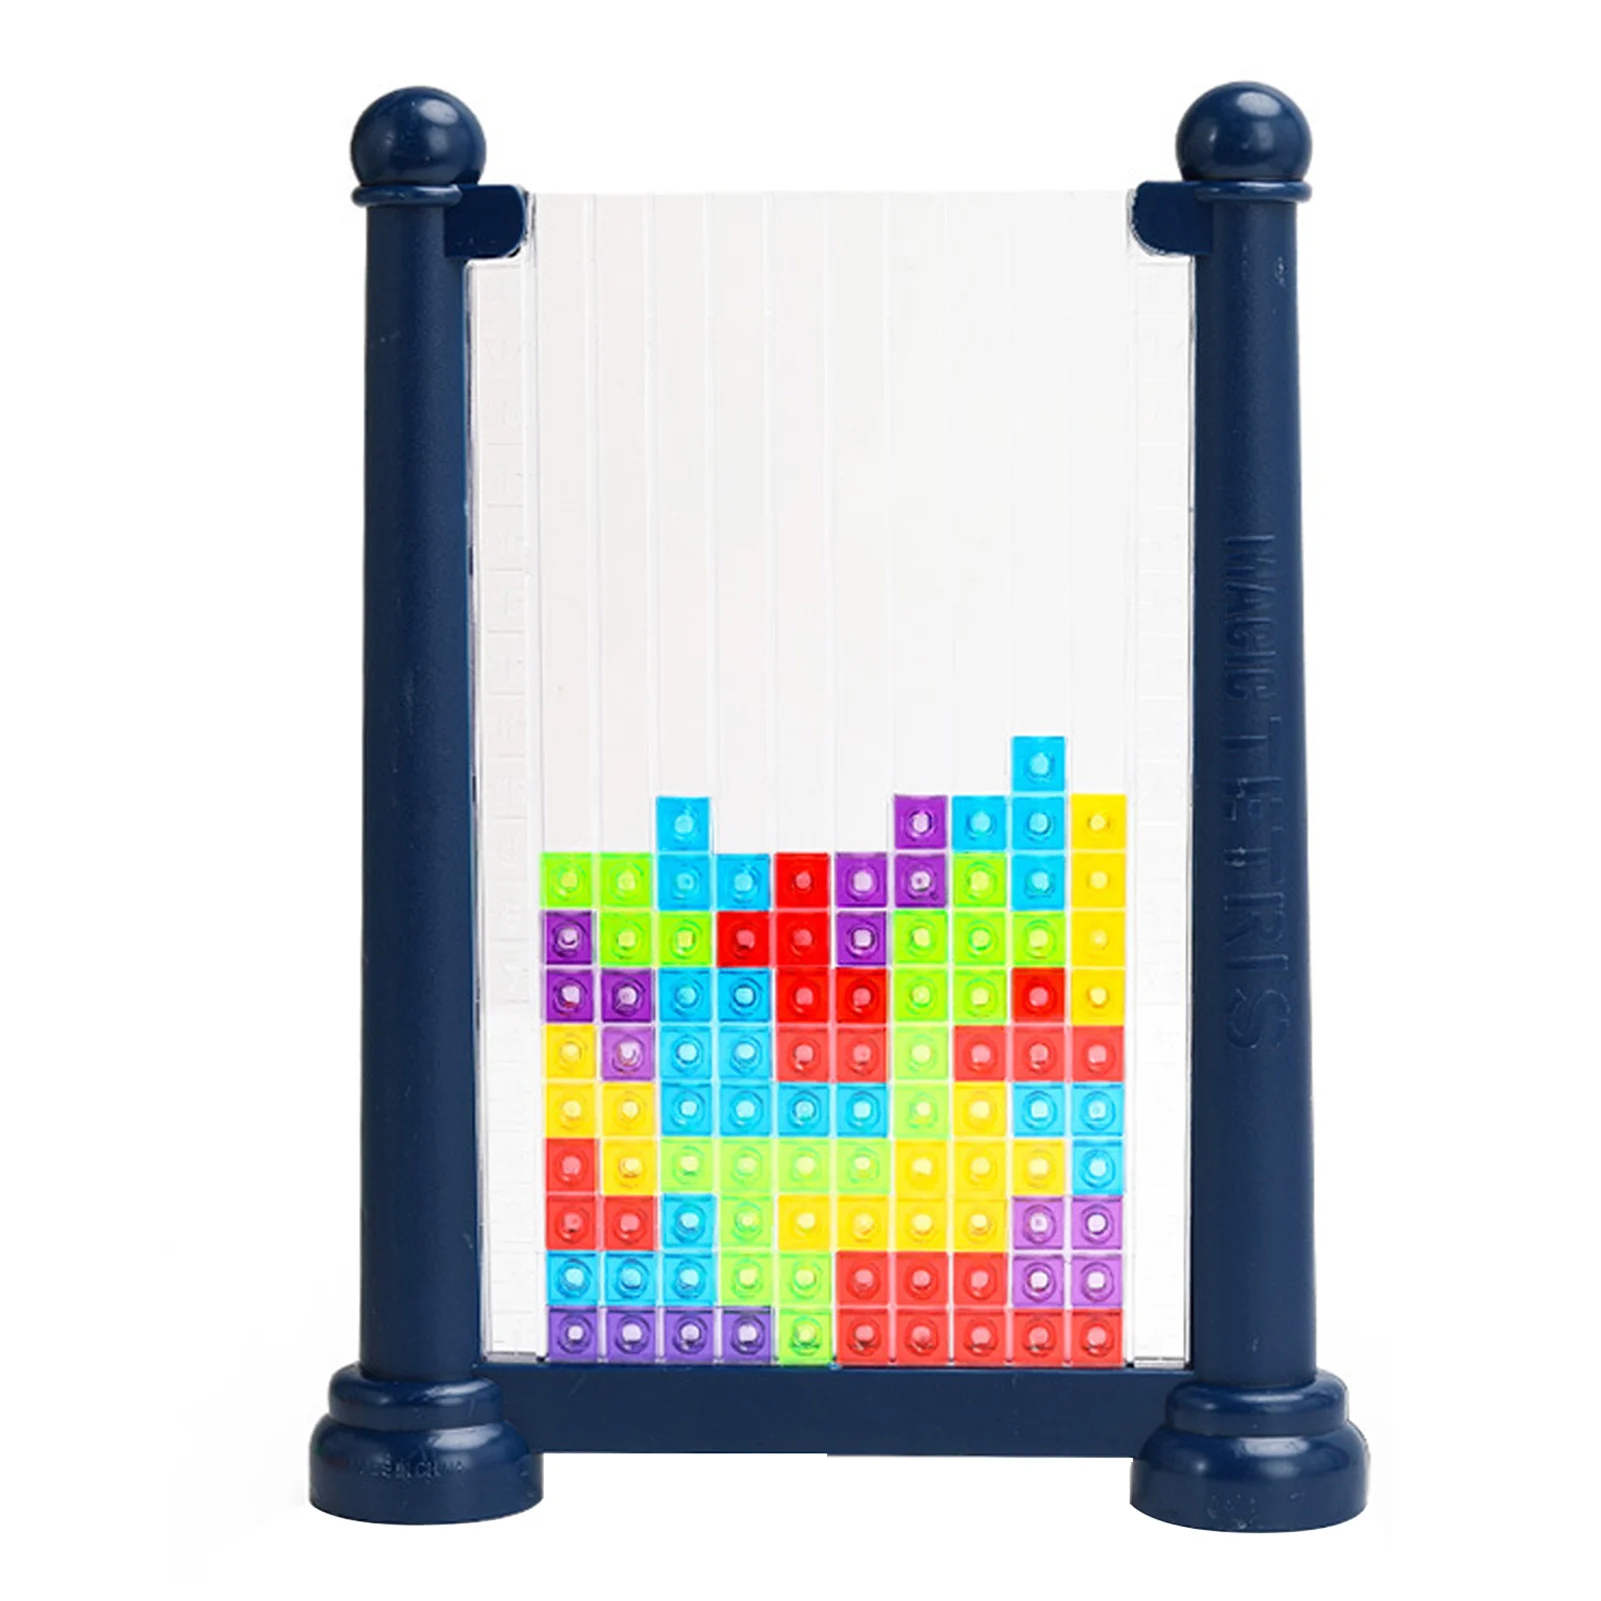 

Настольная игра Tetrises, 3D цветная игра танграмм, стерео, цветные яркие игрушки Монтессори, развивающая игрушка, интеллектуальная волшебная иг...